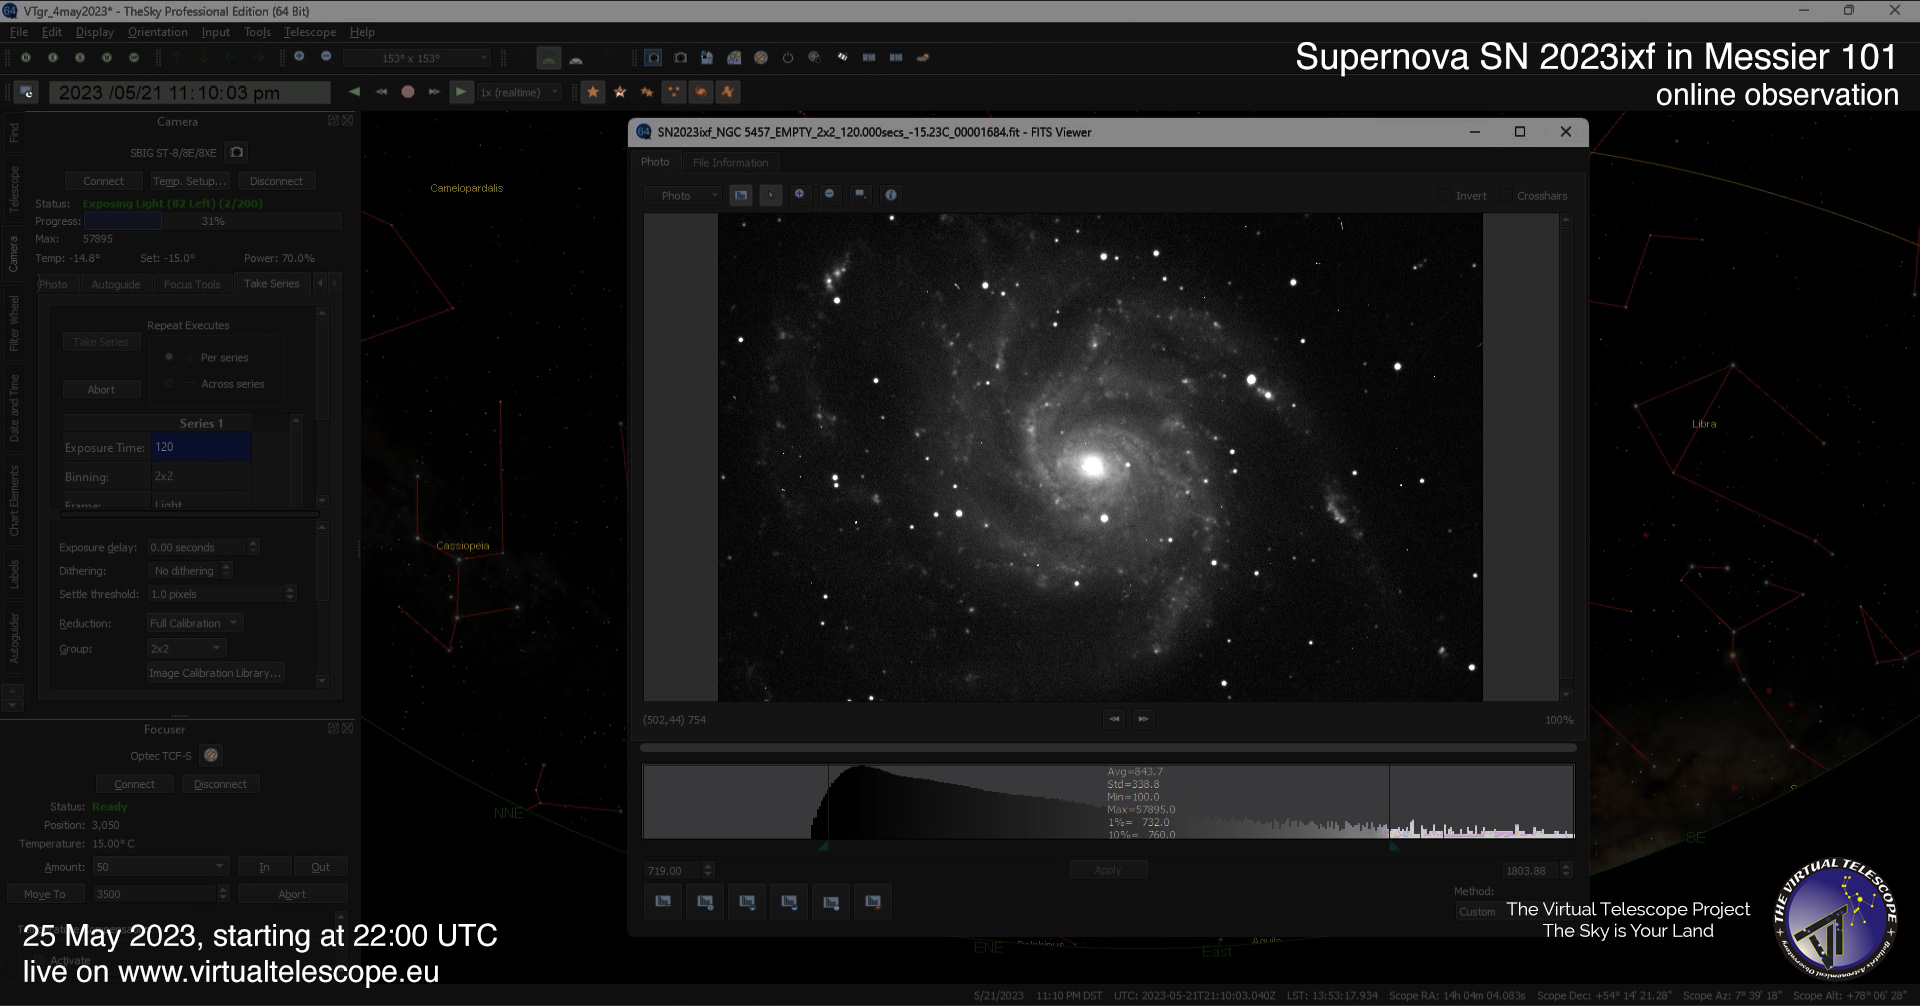 Scoperta la supernova 2023ixf: un'esplosione cosmica nello spettacolo celeste